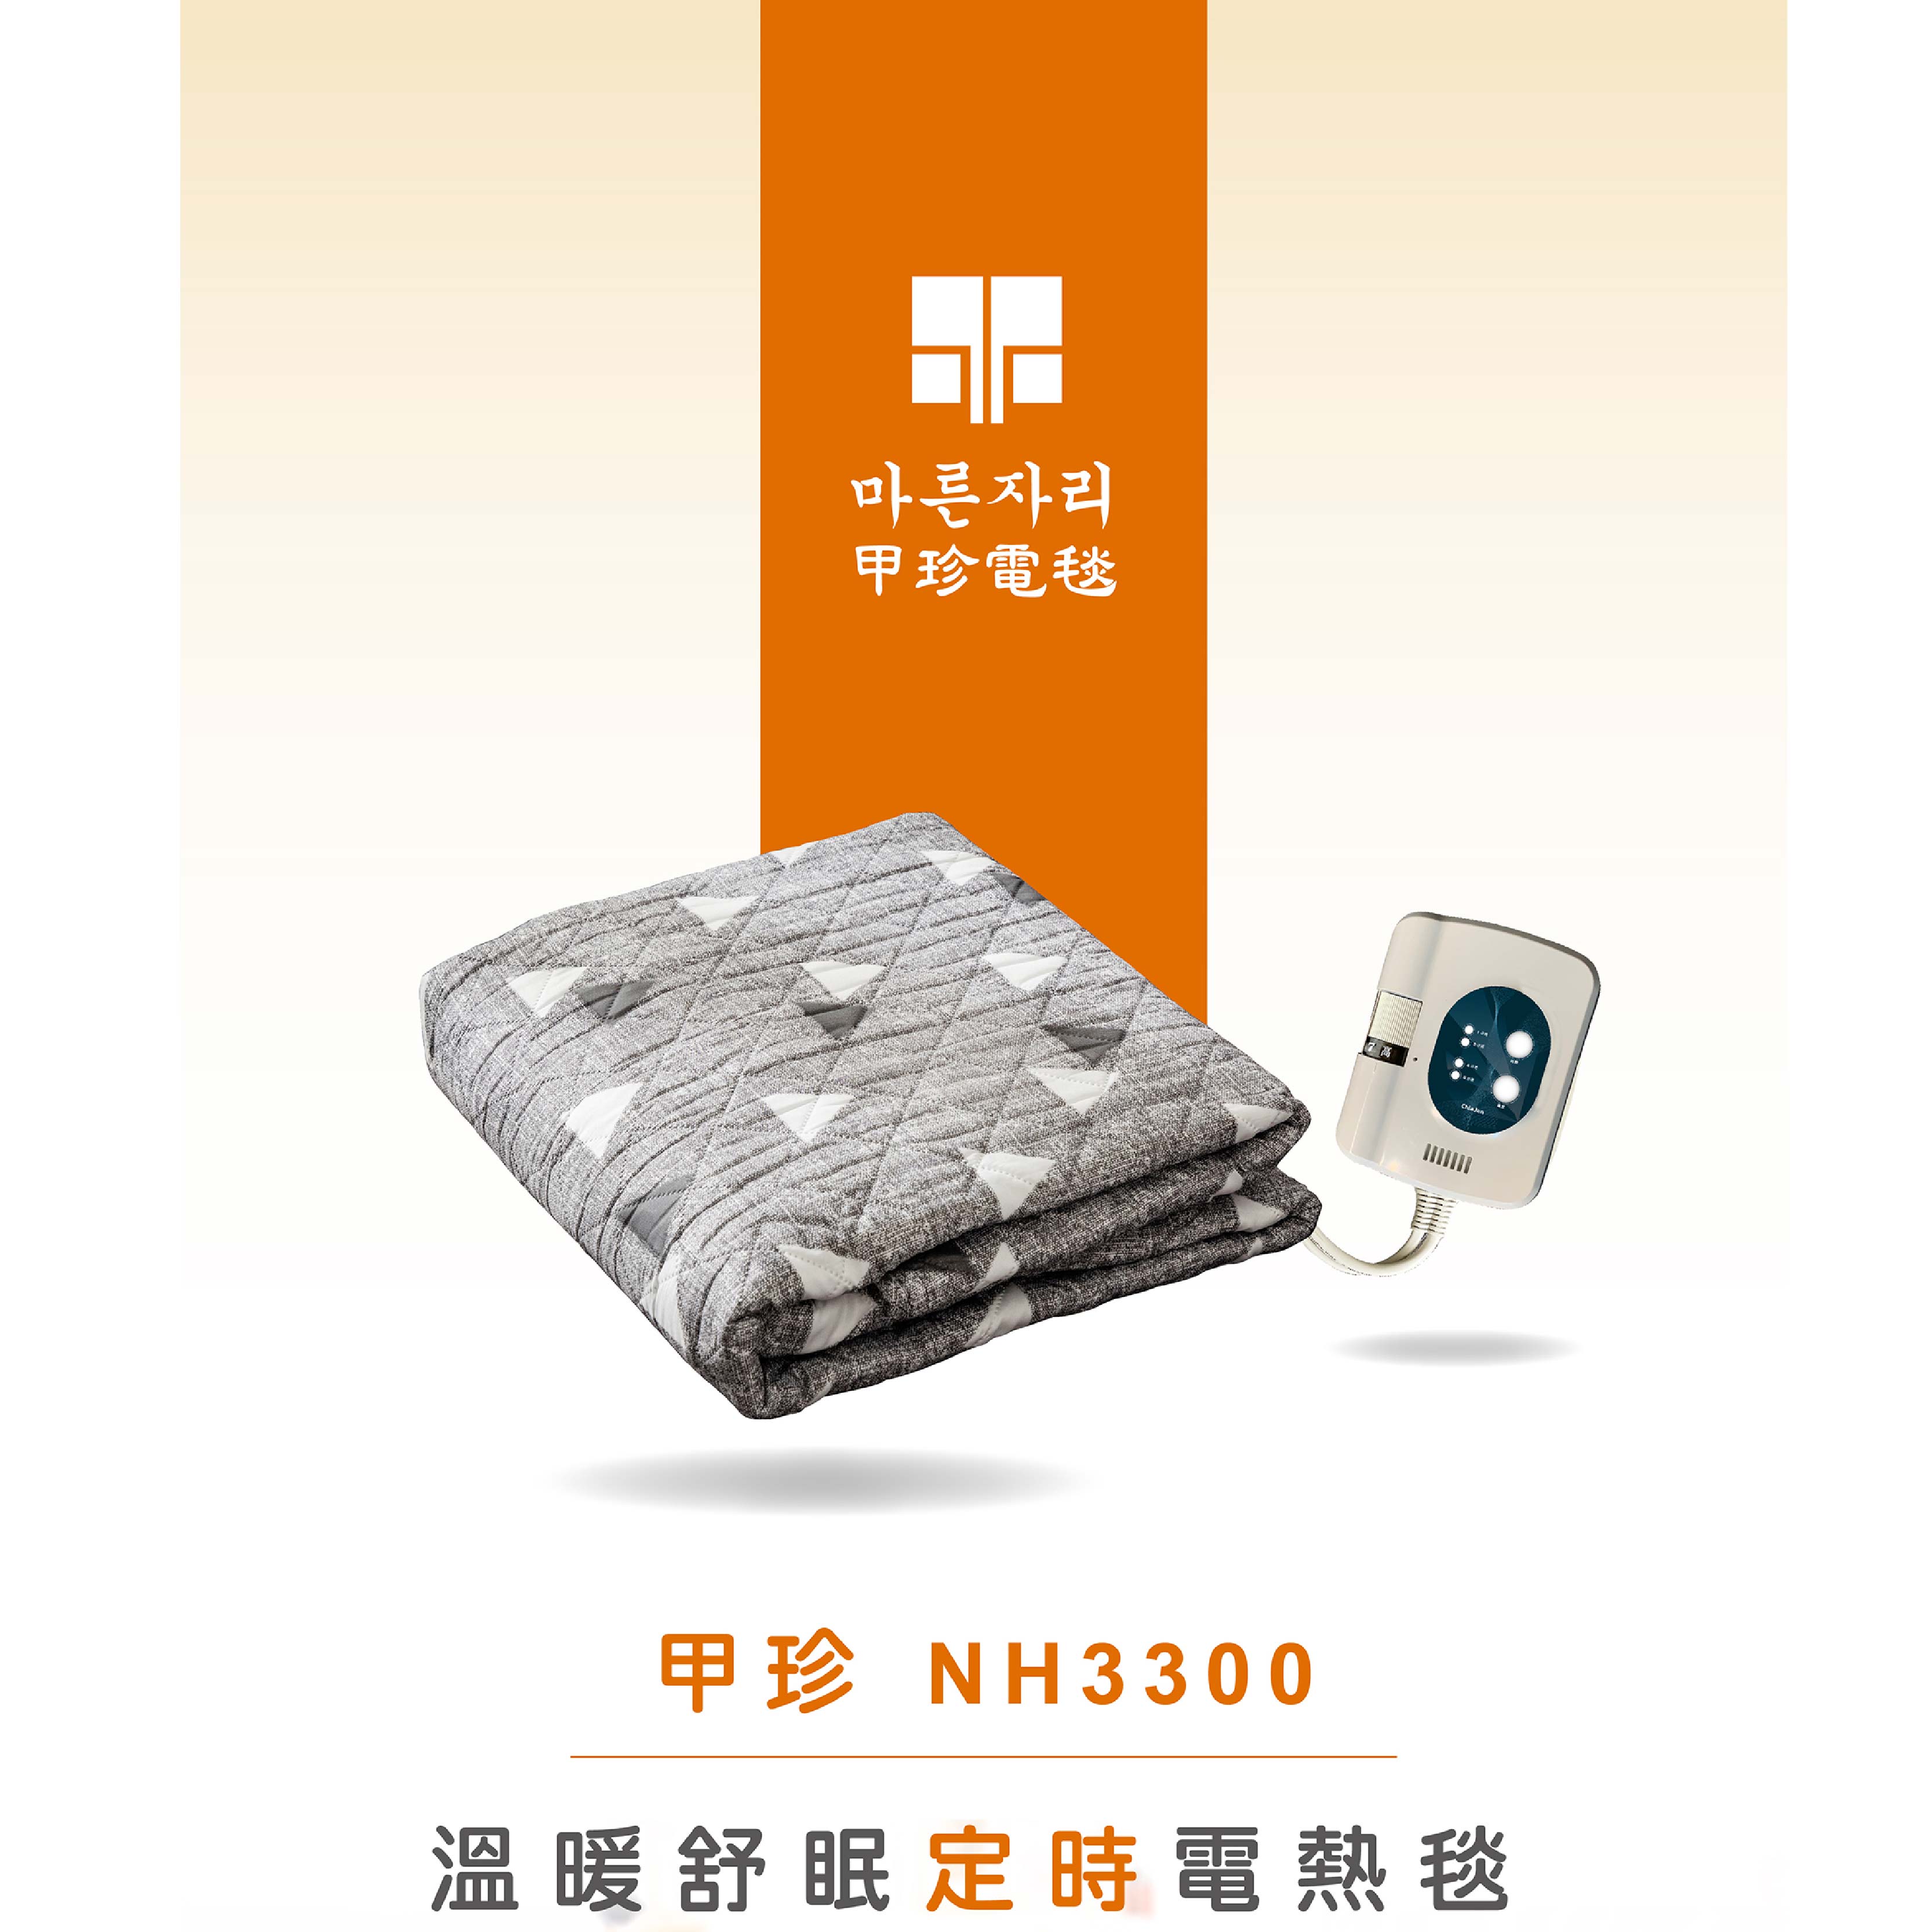 【韓國甲珍】單人 雙人 恆溫7段定時型電熱毯 NH-3300/NH3300 (花色隨機出貨)